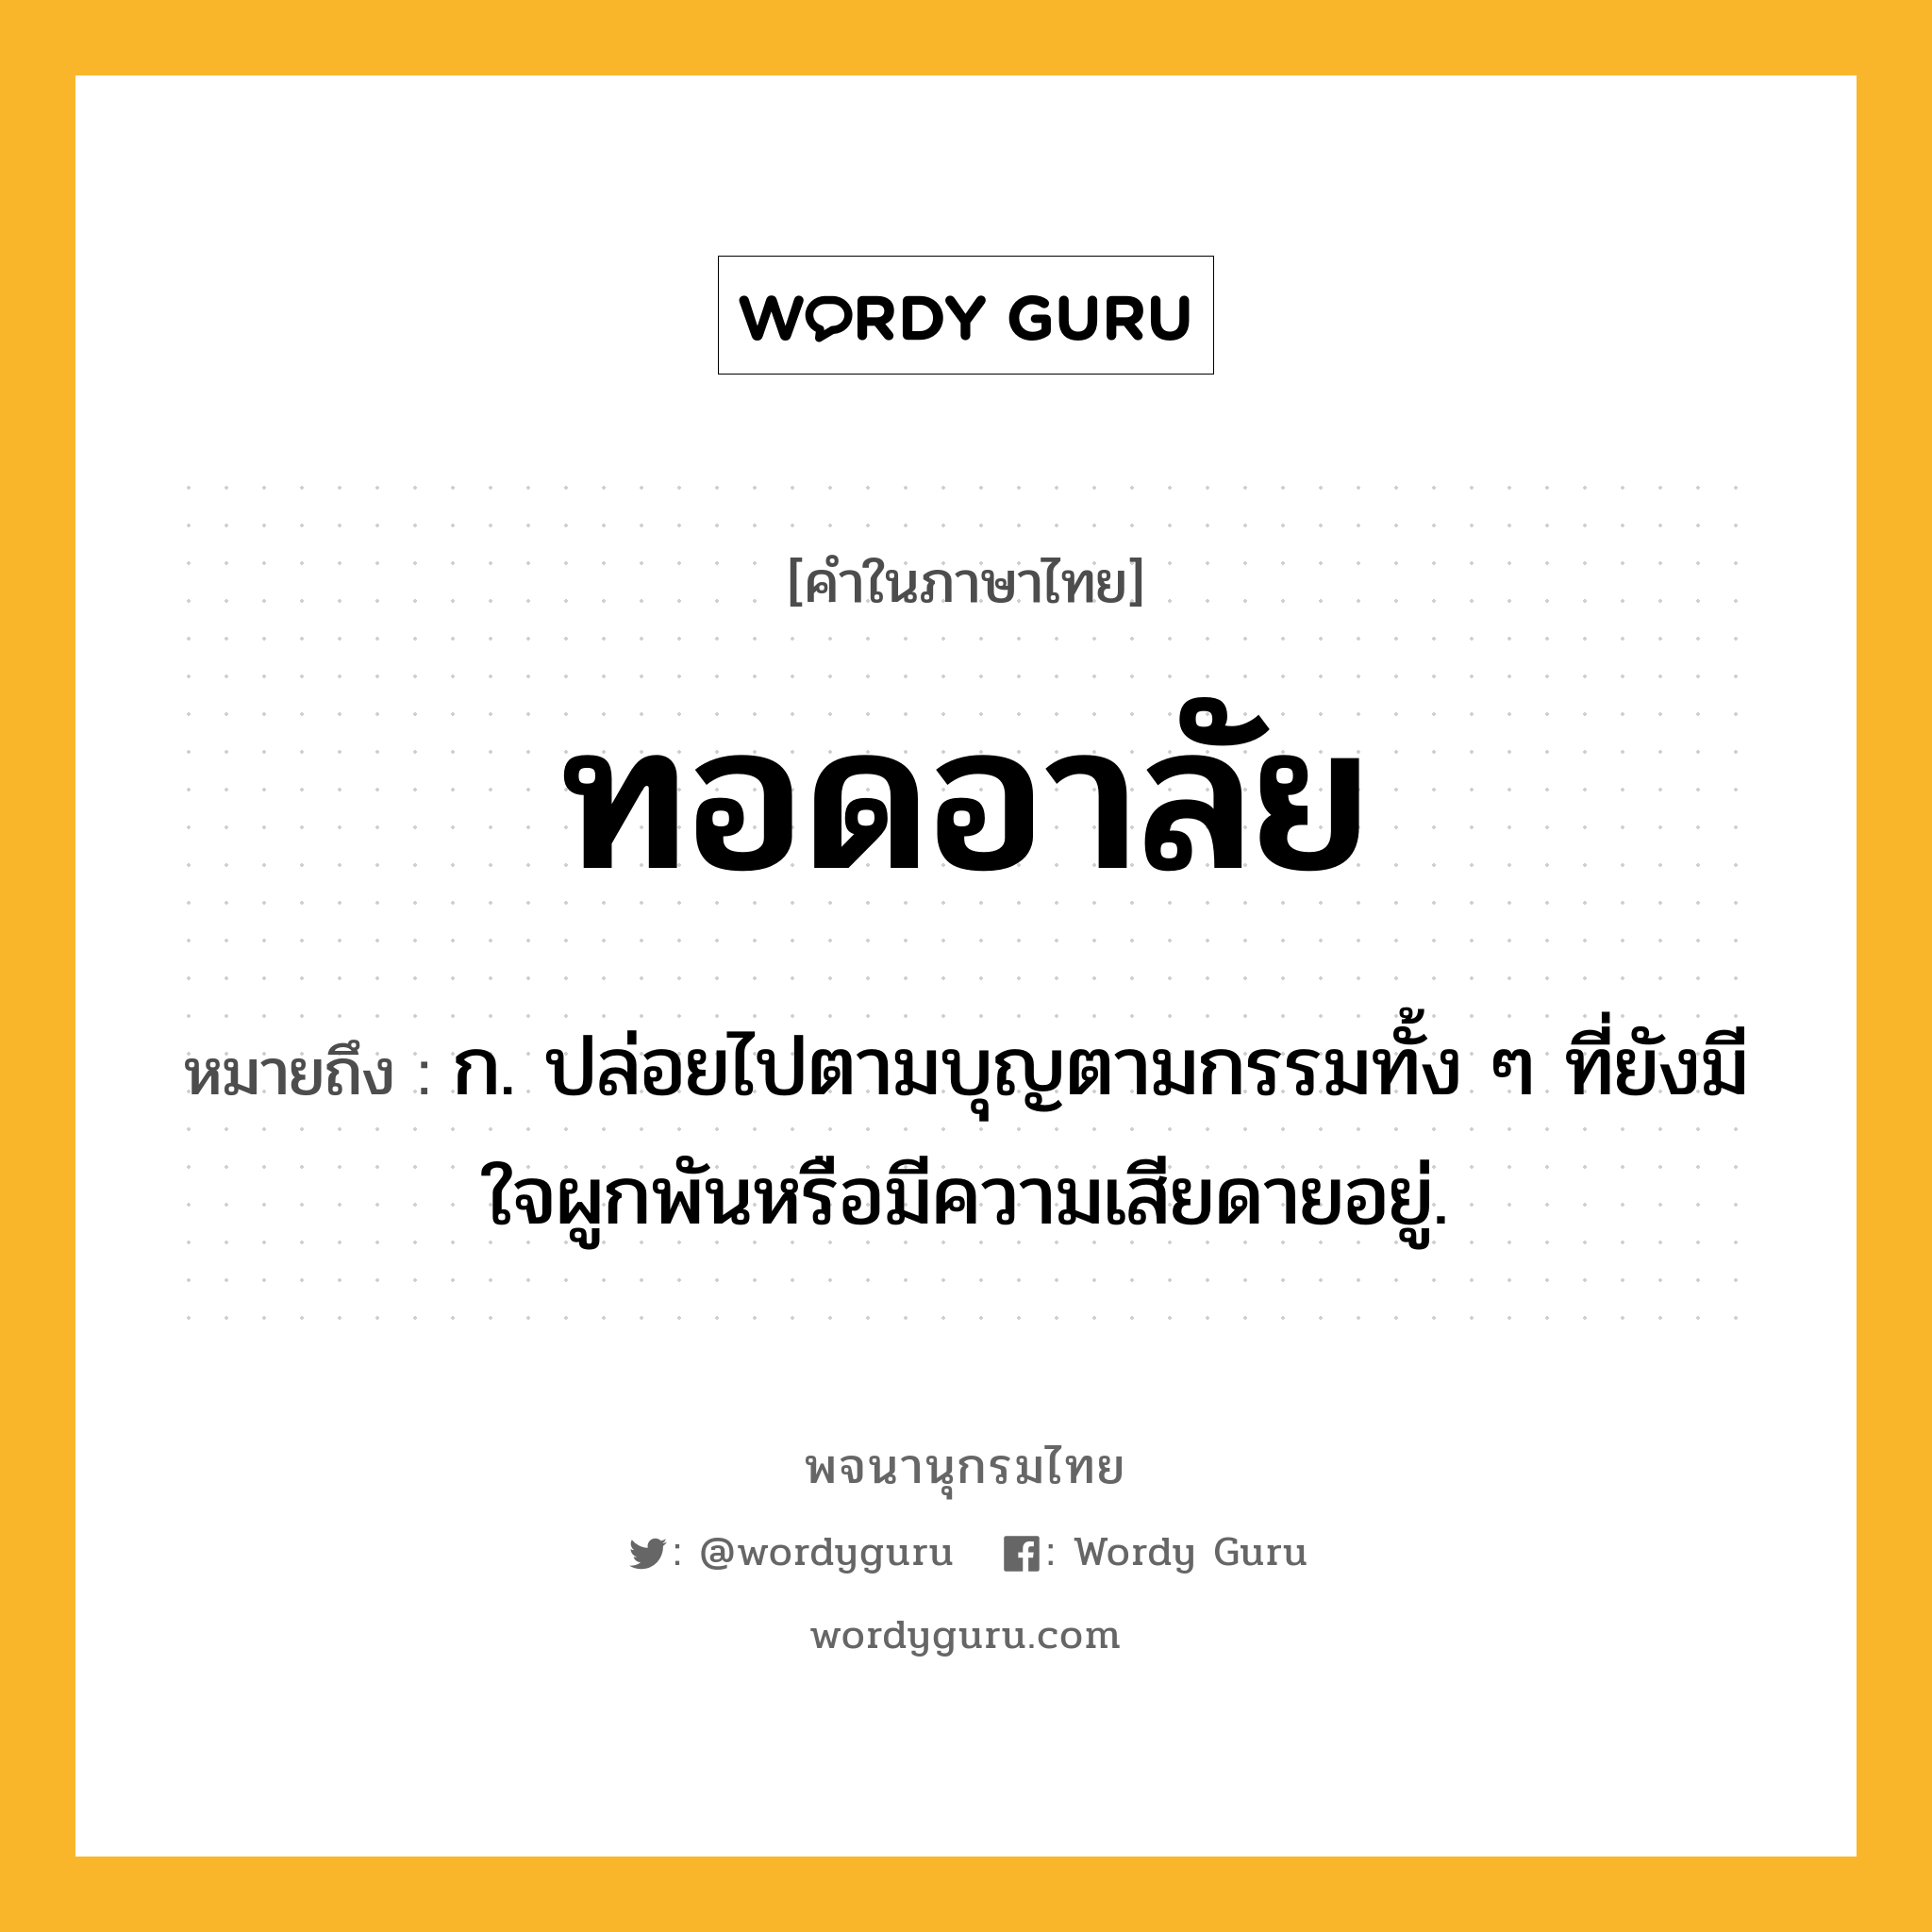 ทอดอาลัย ความหมาย หมายถึงอะไร?, คำในภาษาไทย ทอดอาลัย หมายถึง ก. ปล่อยไปตามบุญตามกรรมทั้ง ๆ ที่ยังมีใจผูกพันหรือมีความเสียดายอยู่.